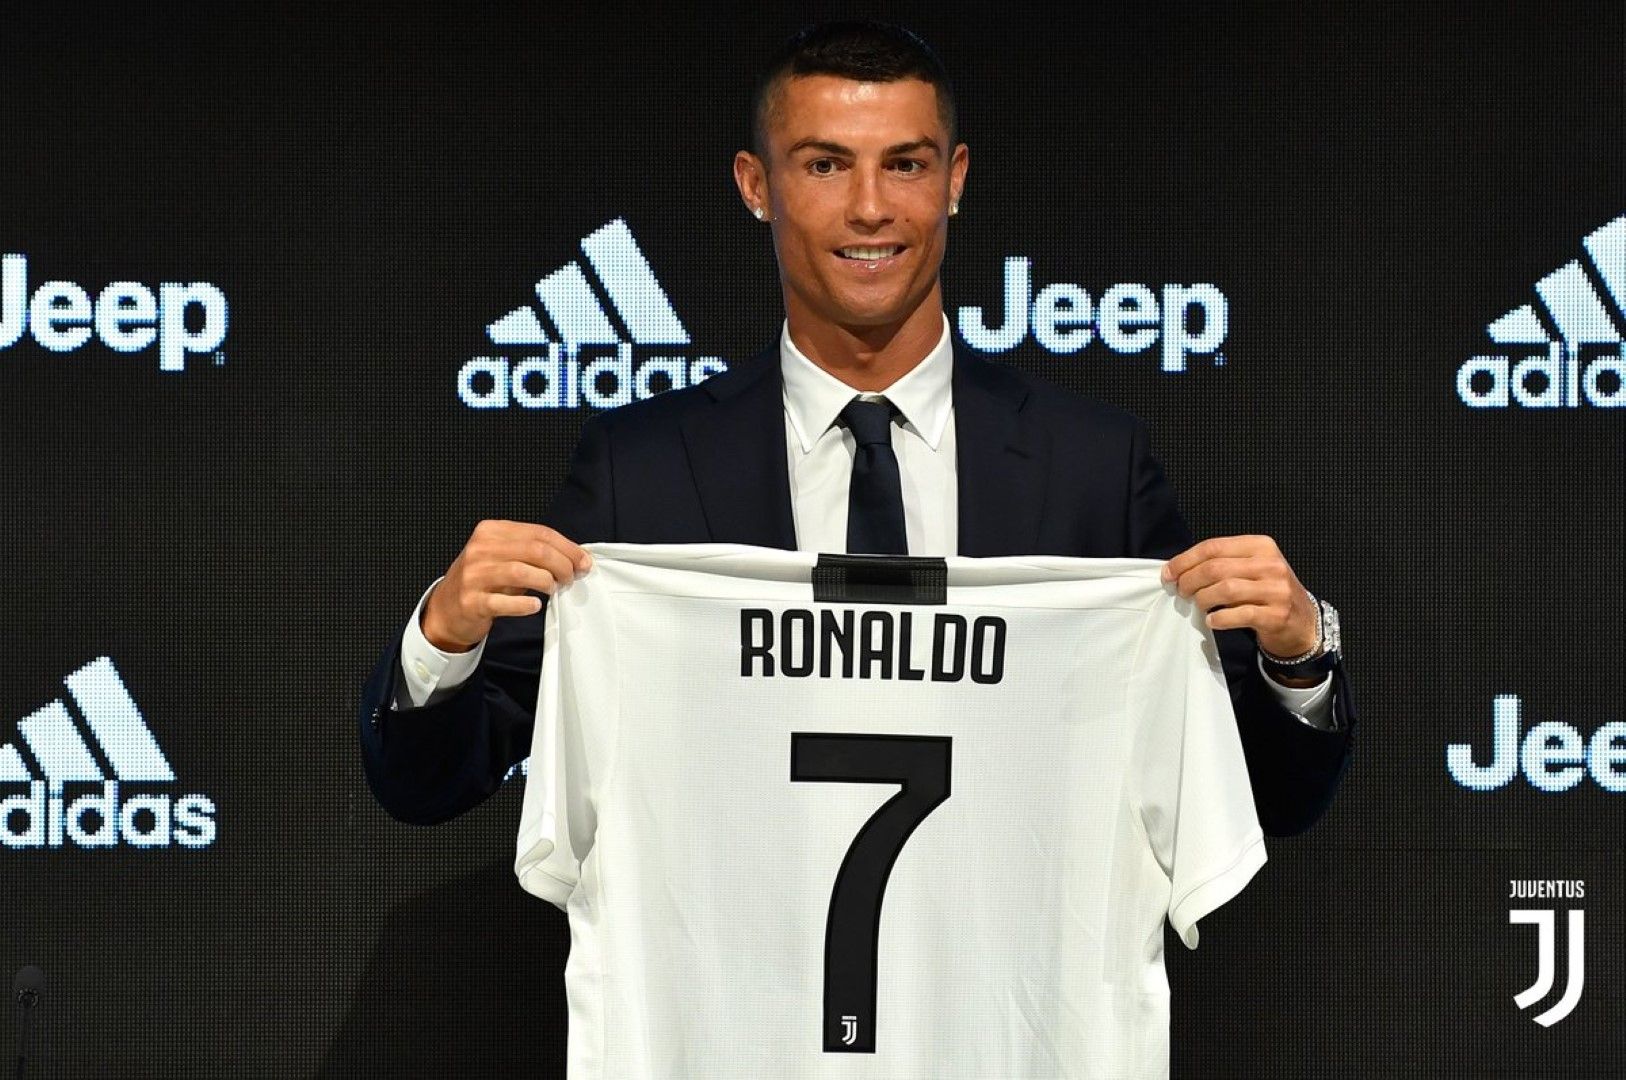 Нападател: Кристиано Роналдо (112 млн. евро). На 33 години той отново е името от заглавията на всяка медия по света. "Ювентус" го купи за сериозната сума и - няма съмнение - той си струва парите.